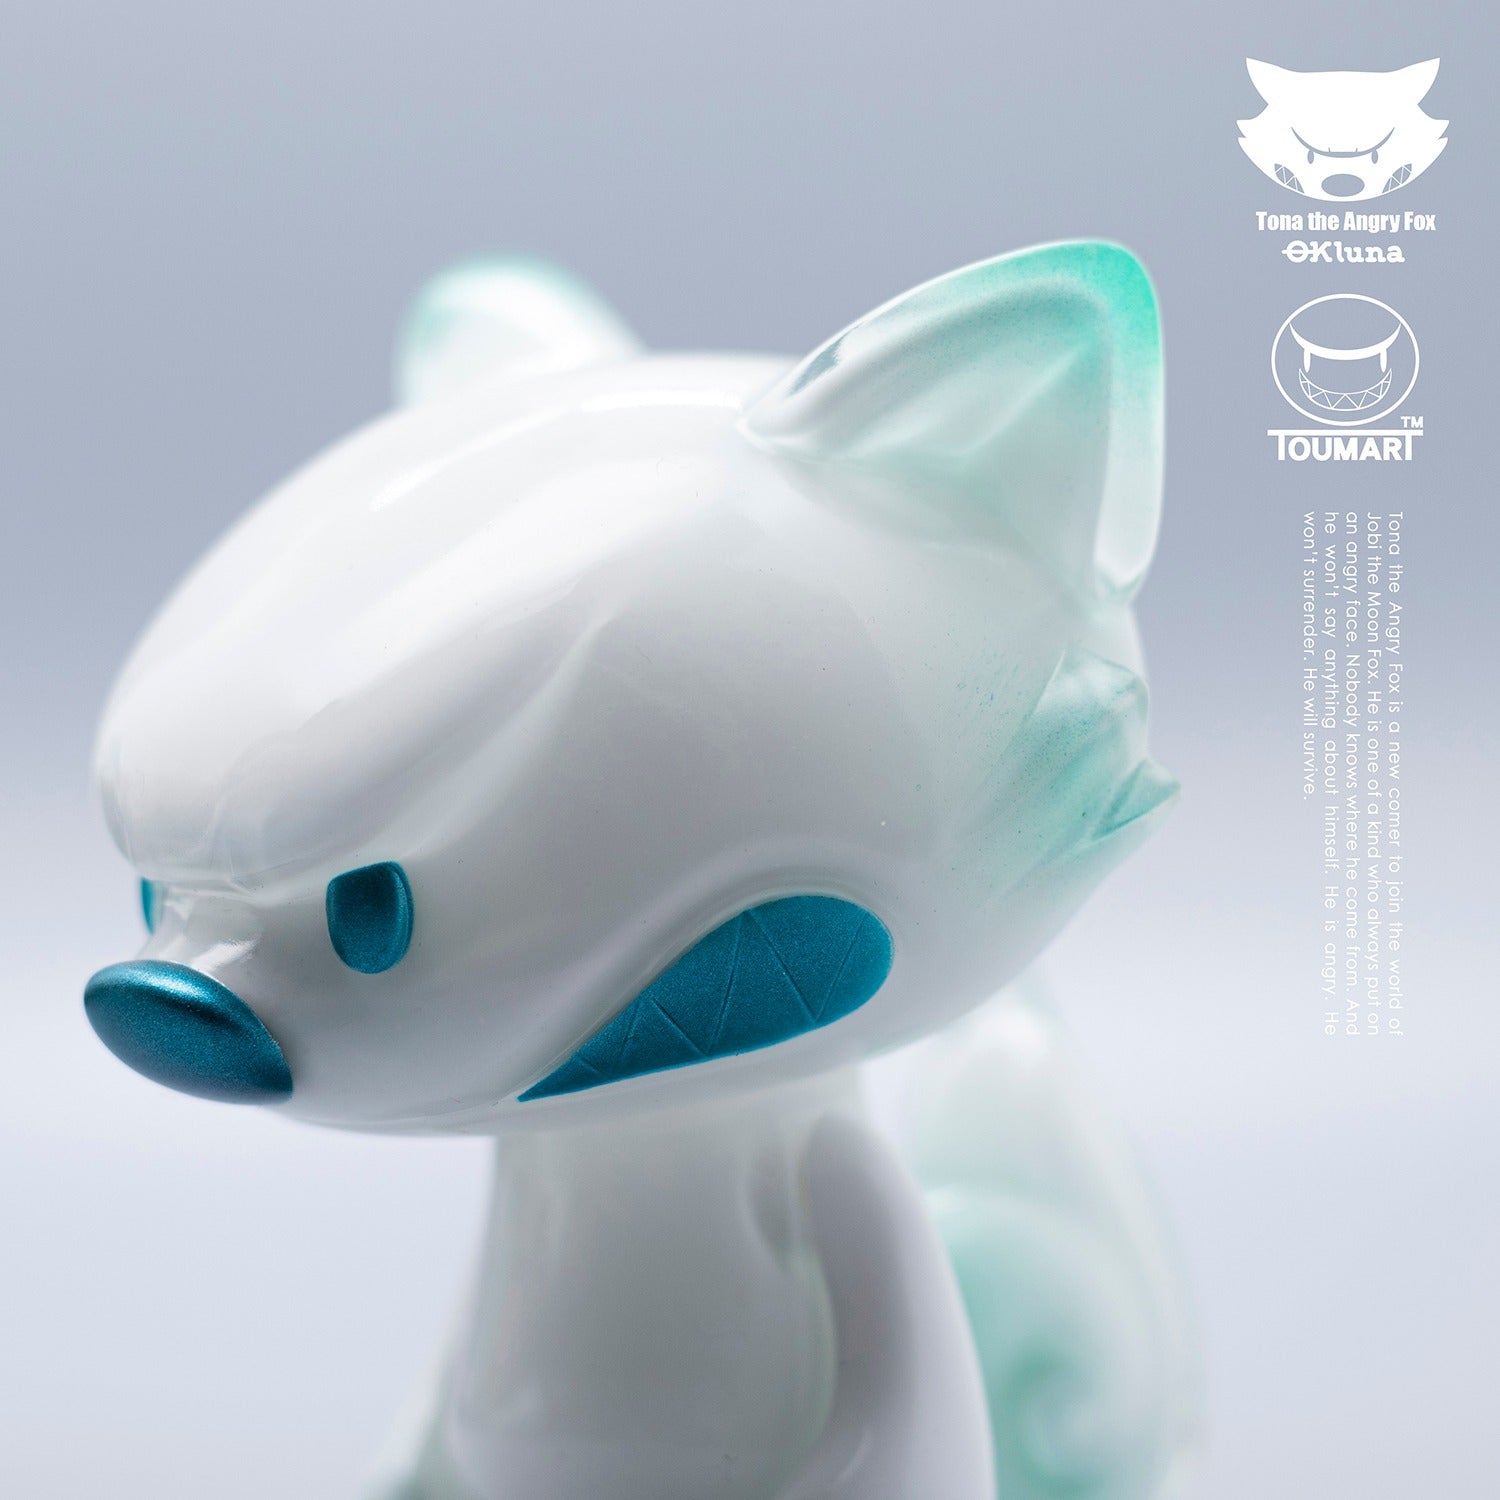 Lil' Tona (Fuji) FOX by Touma x Ok Luna